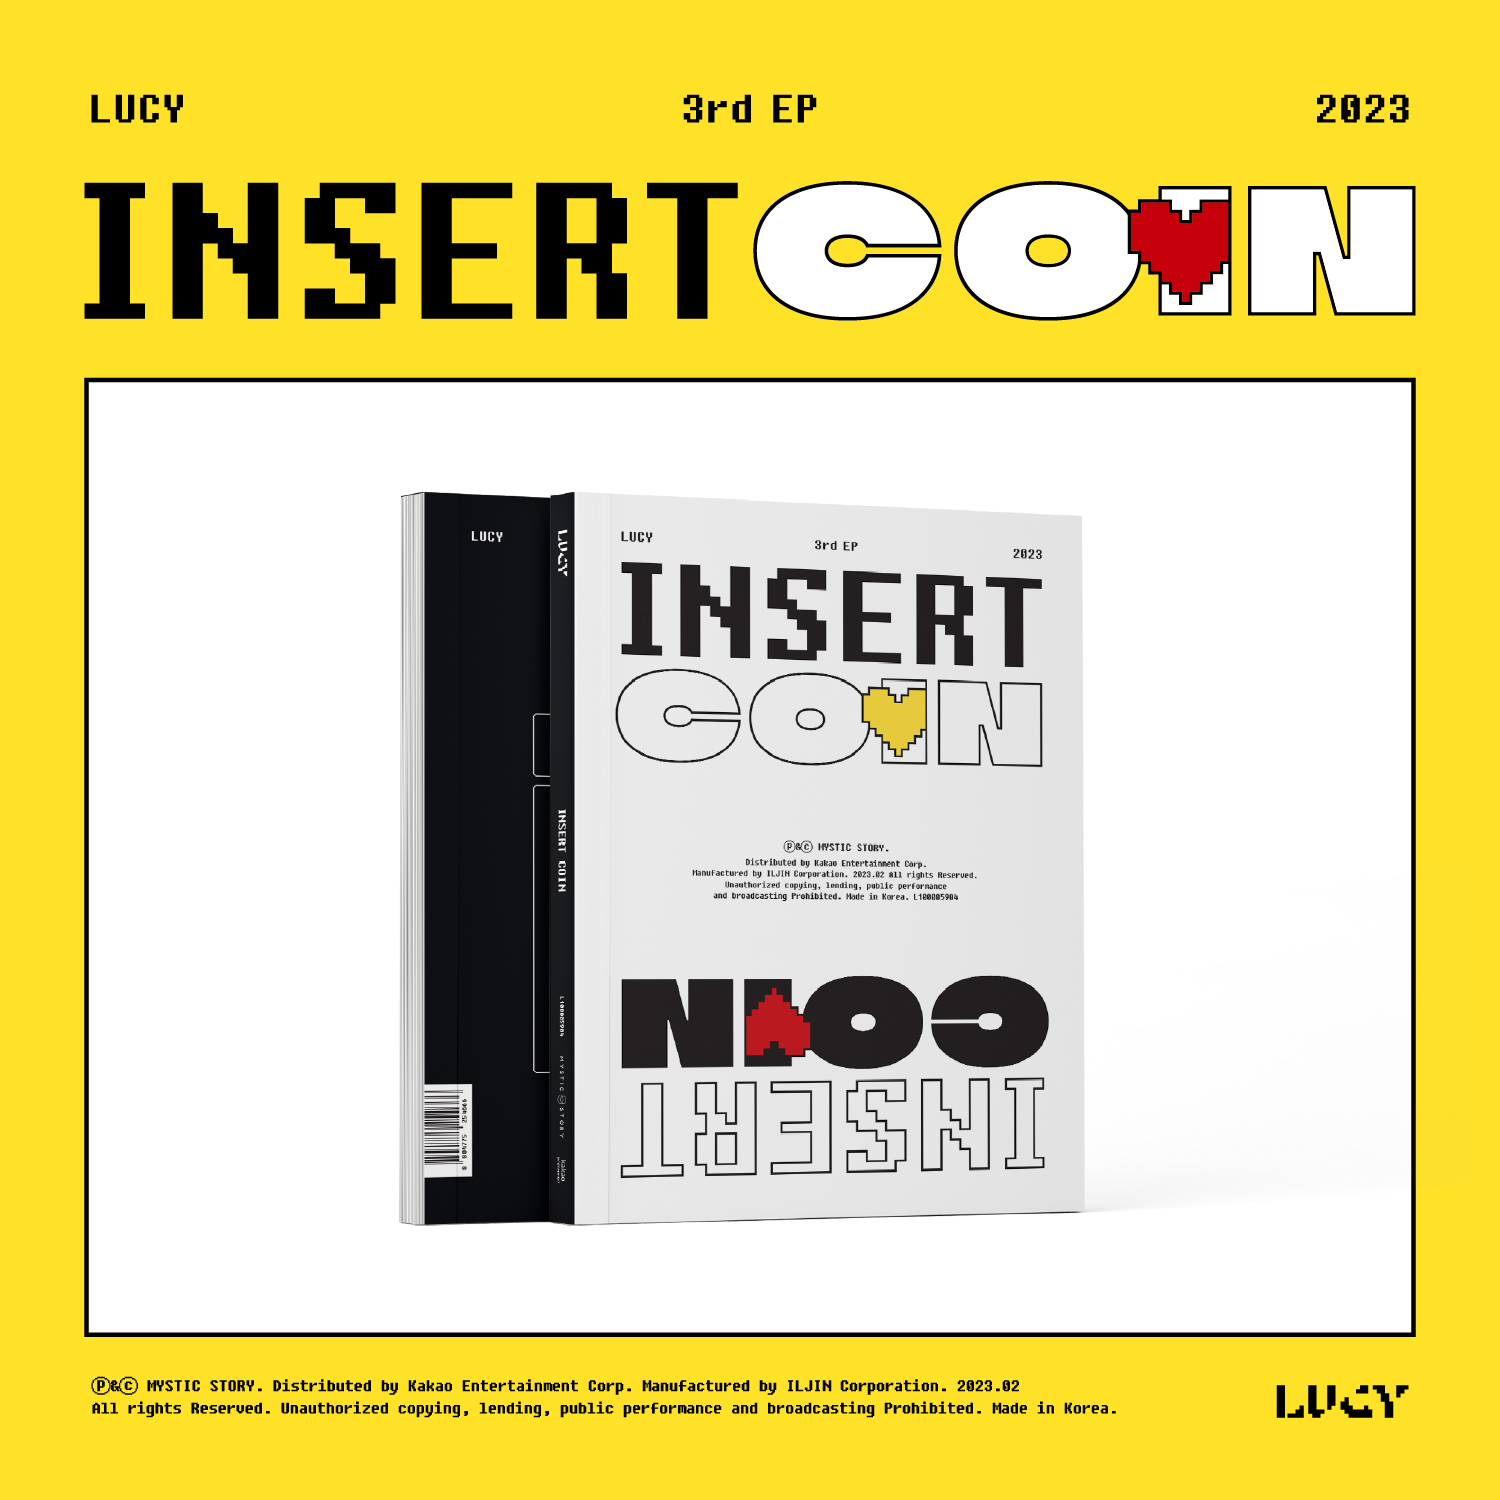 [全款 裸专 第二批 截止到3.1早7点] LUCY - EP专辑 3辑 [Insert Coin] _LUCYvillage_鲁西犬舍